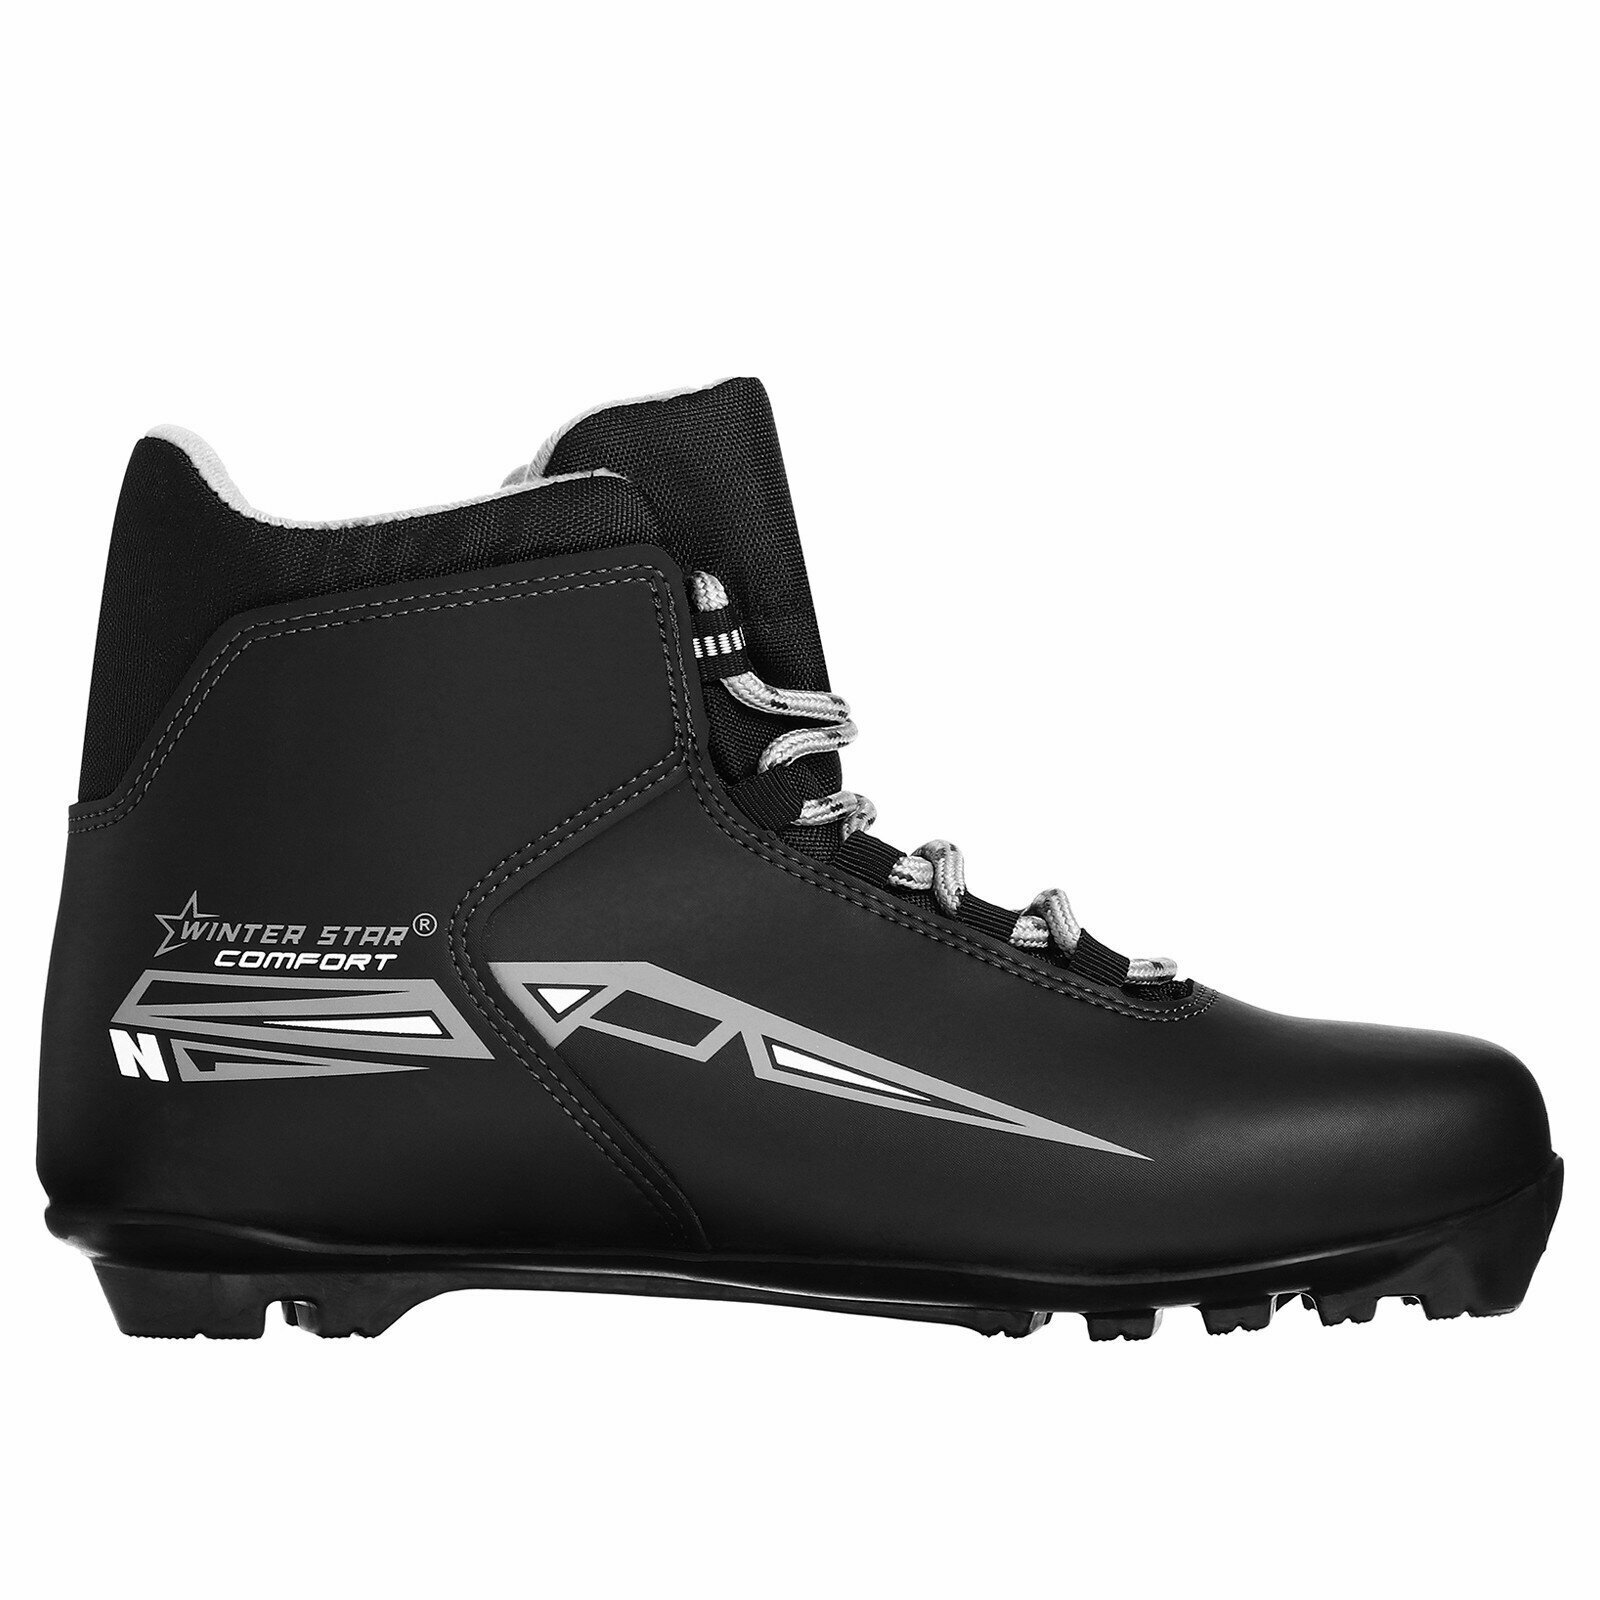 Ботинки лыжные Winter Star comfort, NNN, р. 42, цвет чёрный, лого серый